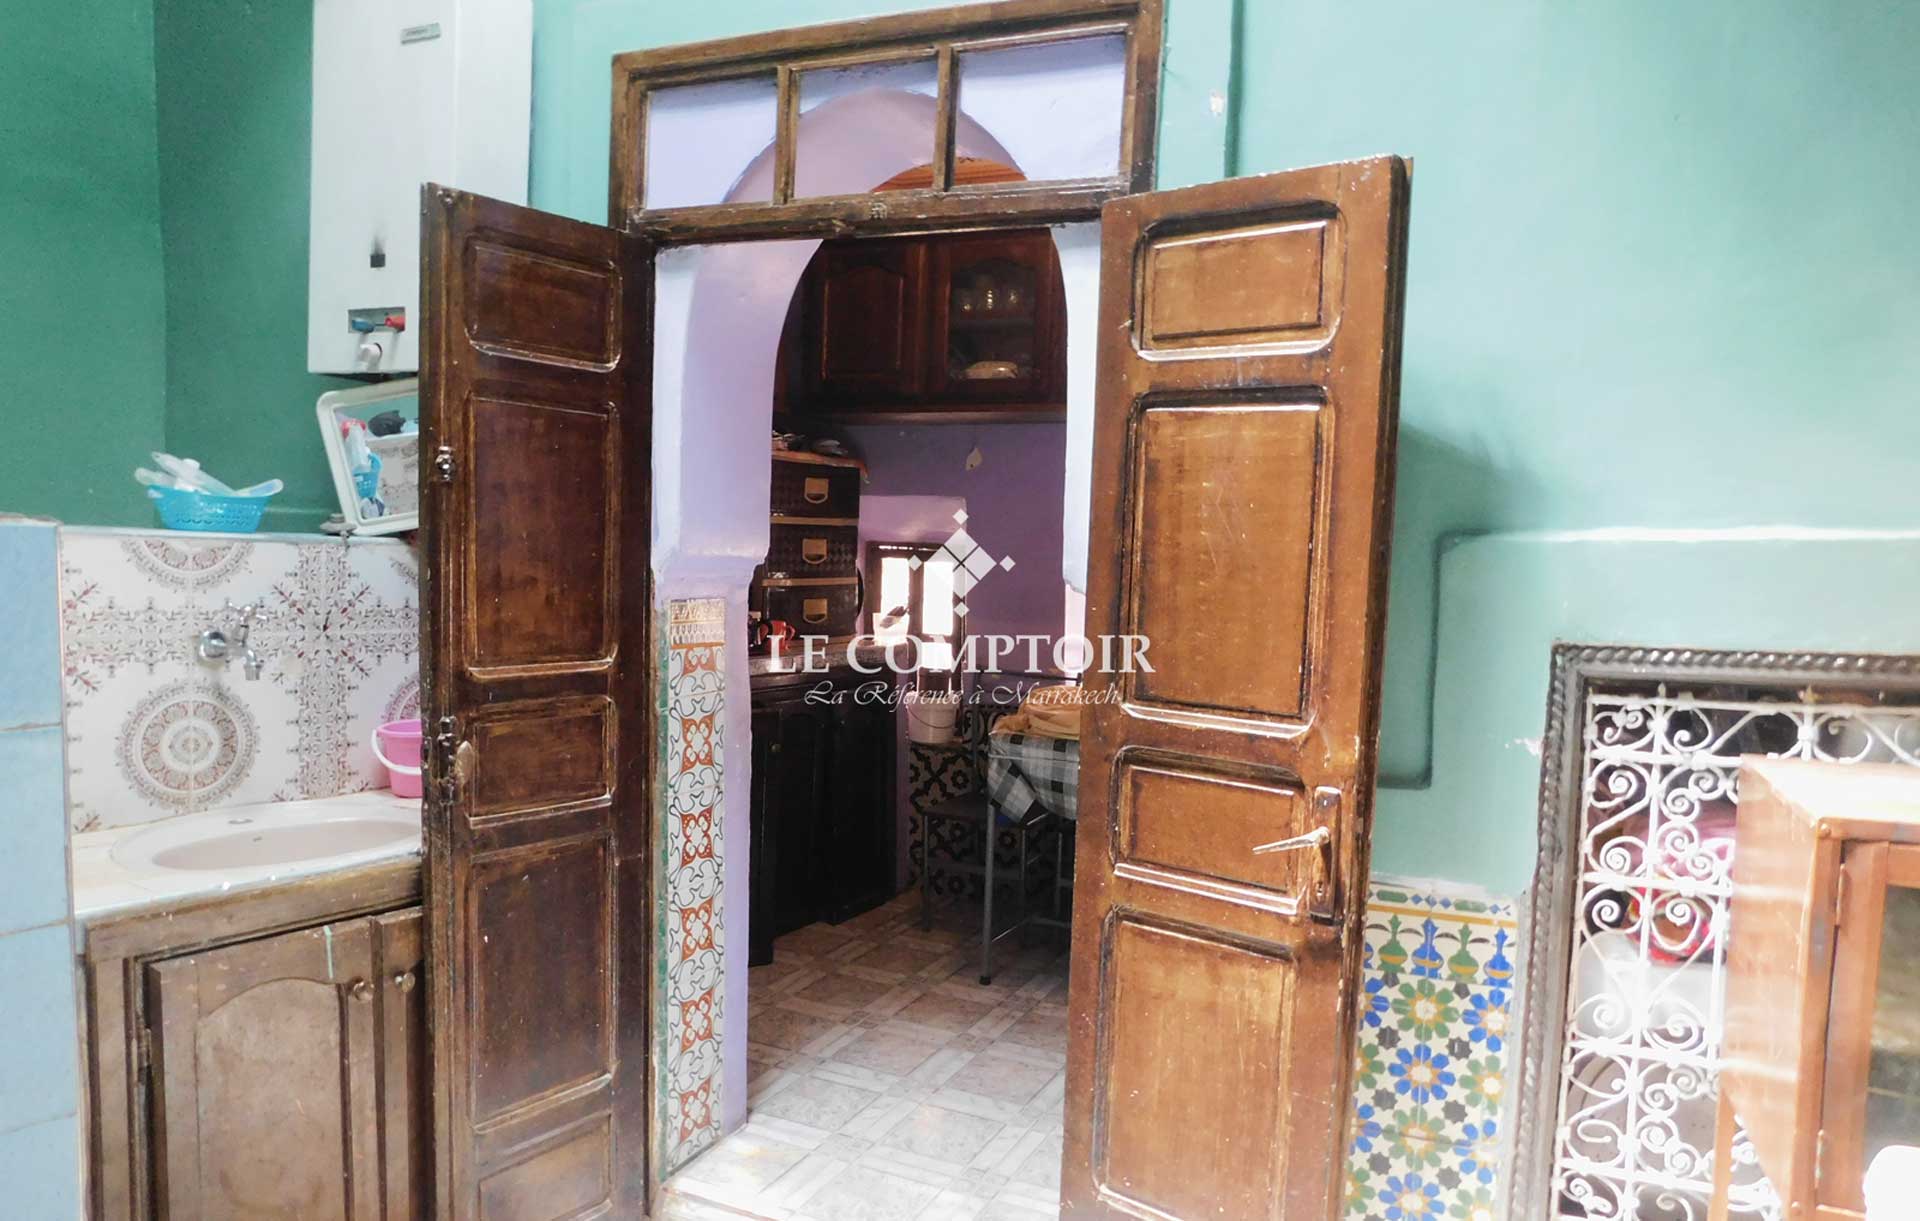 Le Comptoir Immobilier Agence Immobiliere Marrakech Vente Riad A Renover Derb Dabachi Medina Marrakech 7